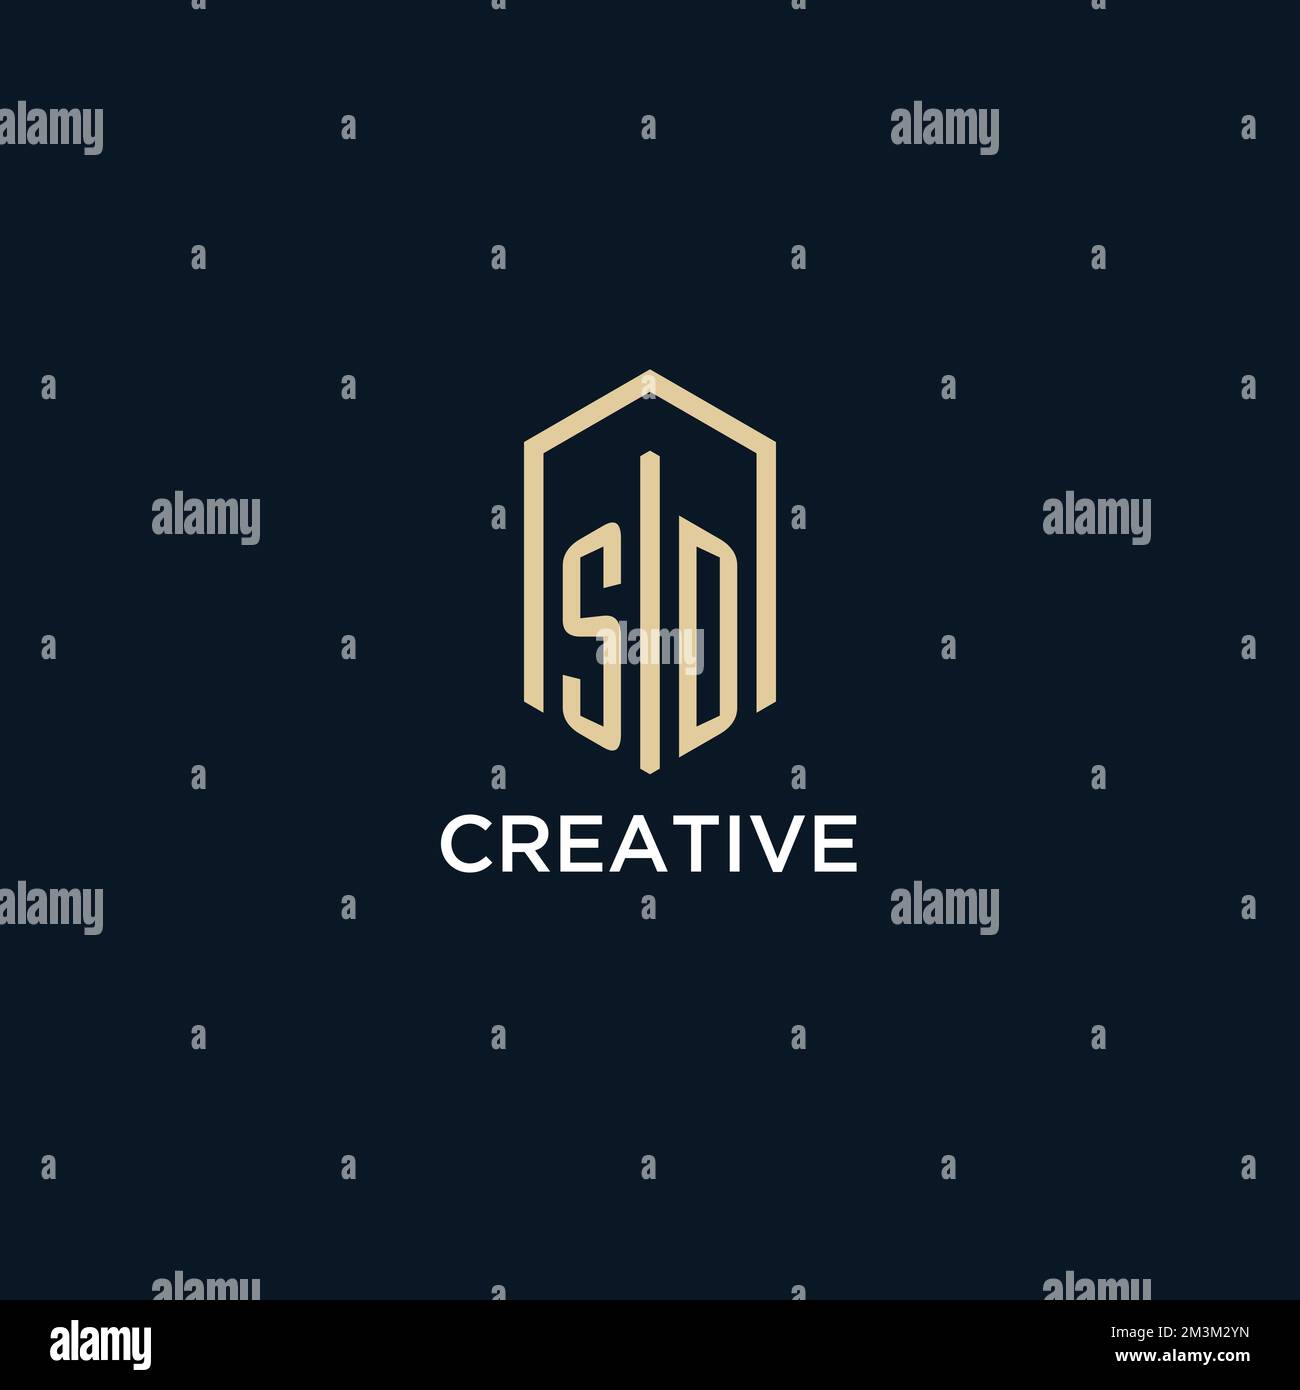 SD initial monogram logo with hexagonal shape style, real estate logo design ideas inspiration vector Stock Vector